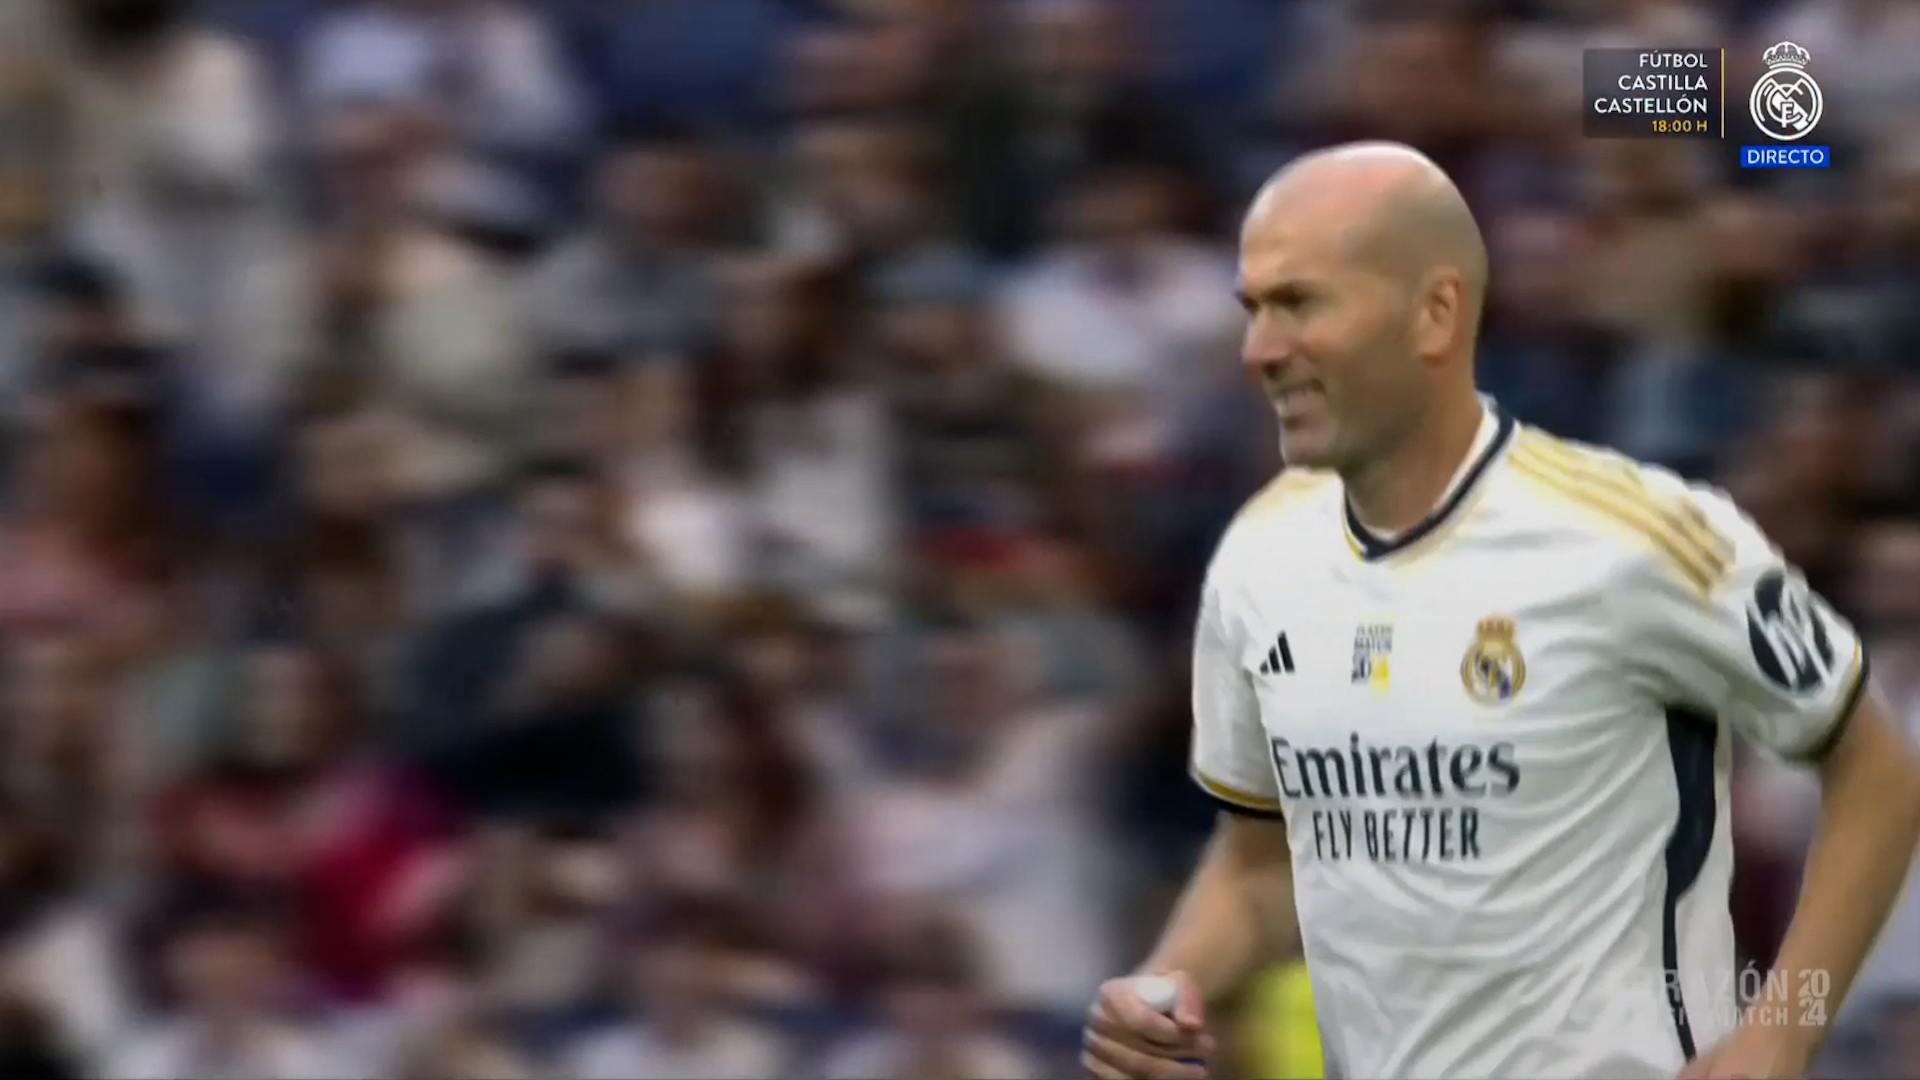 La ovación atronadora del nuevo Bernabéu a Zidane